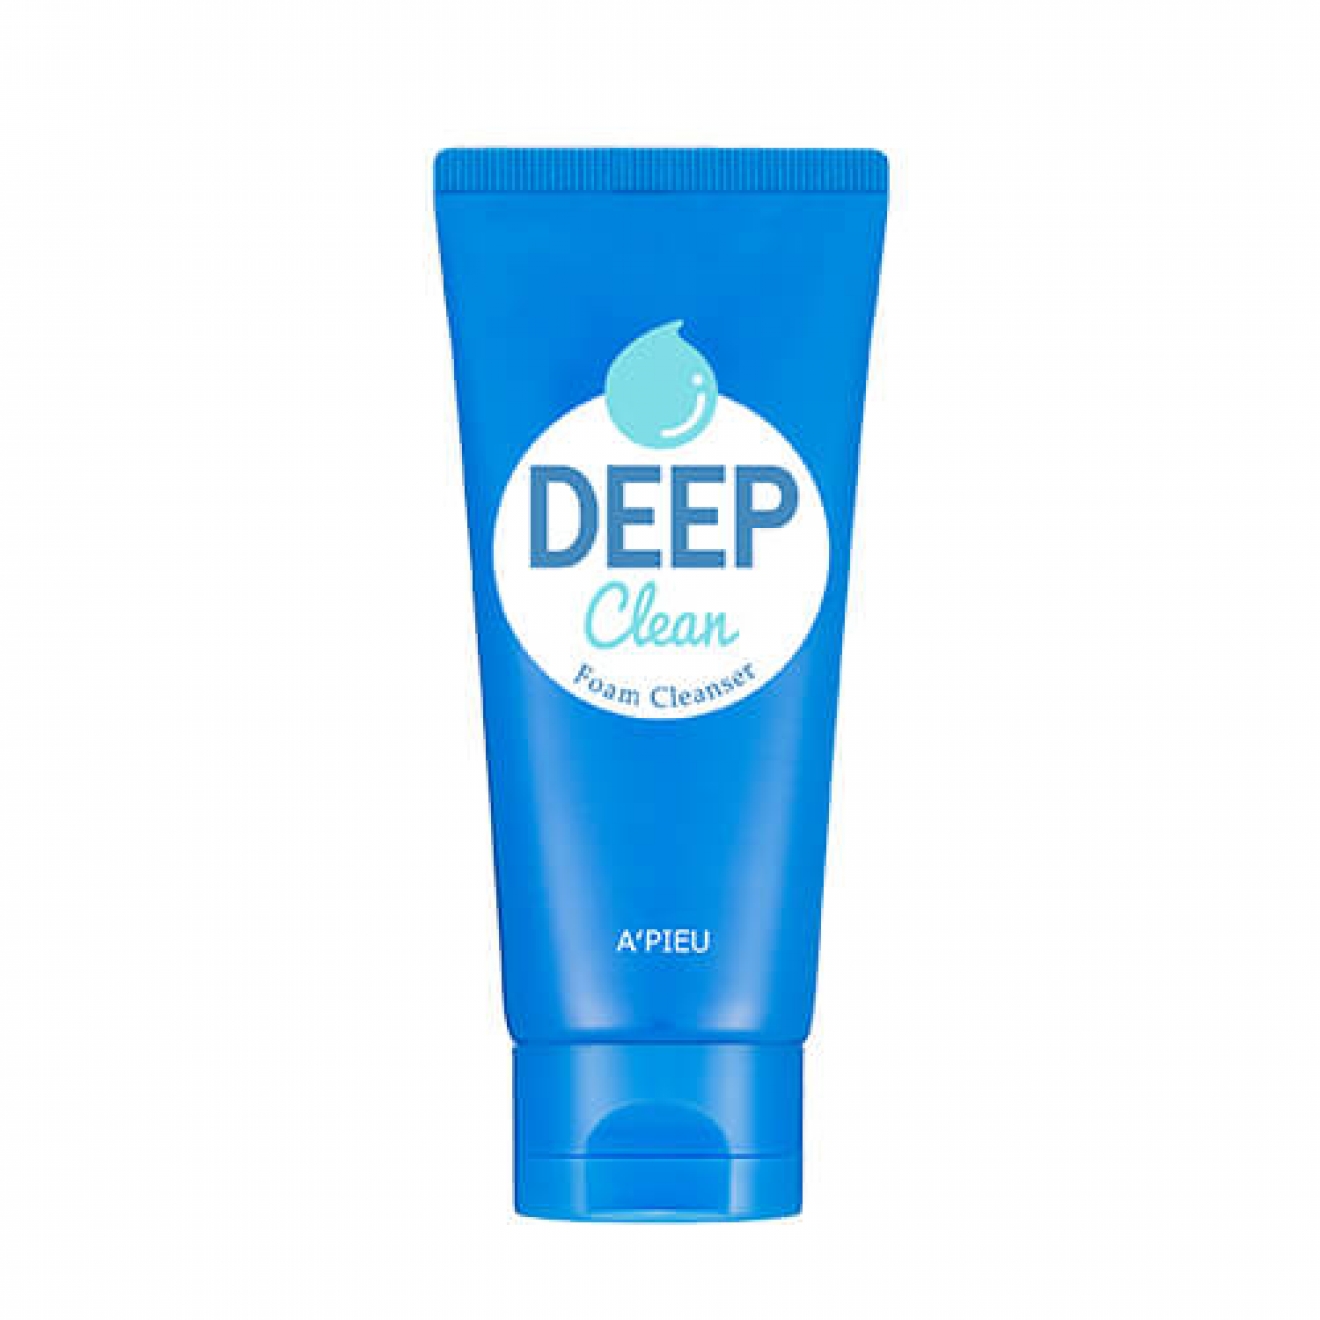 Пена для глубокой очистки, Apieu, Deep Clean Foam Cleanser,130 ml